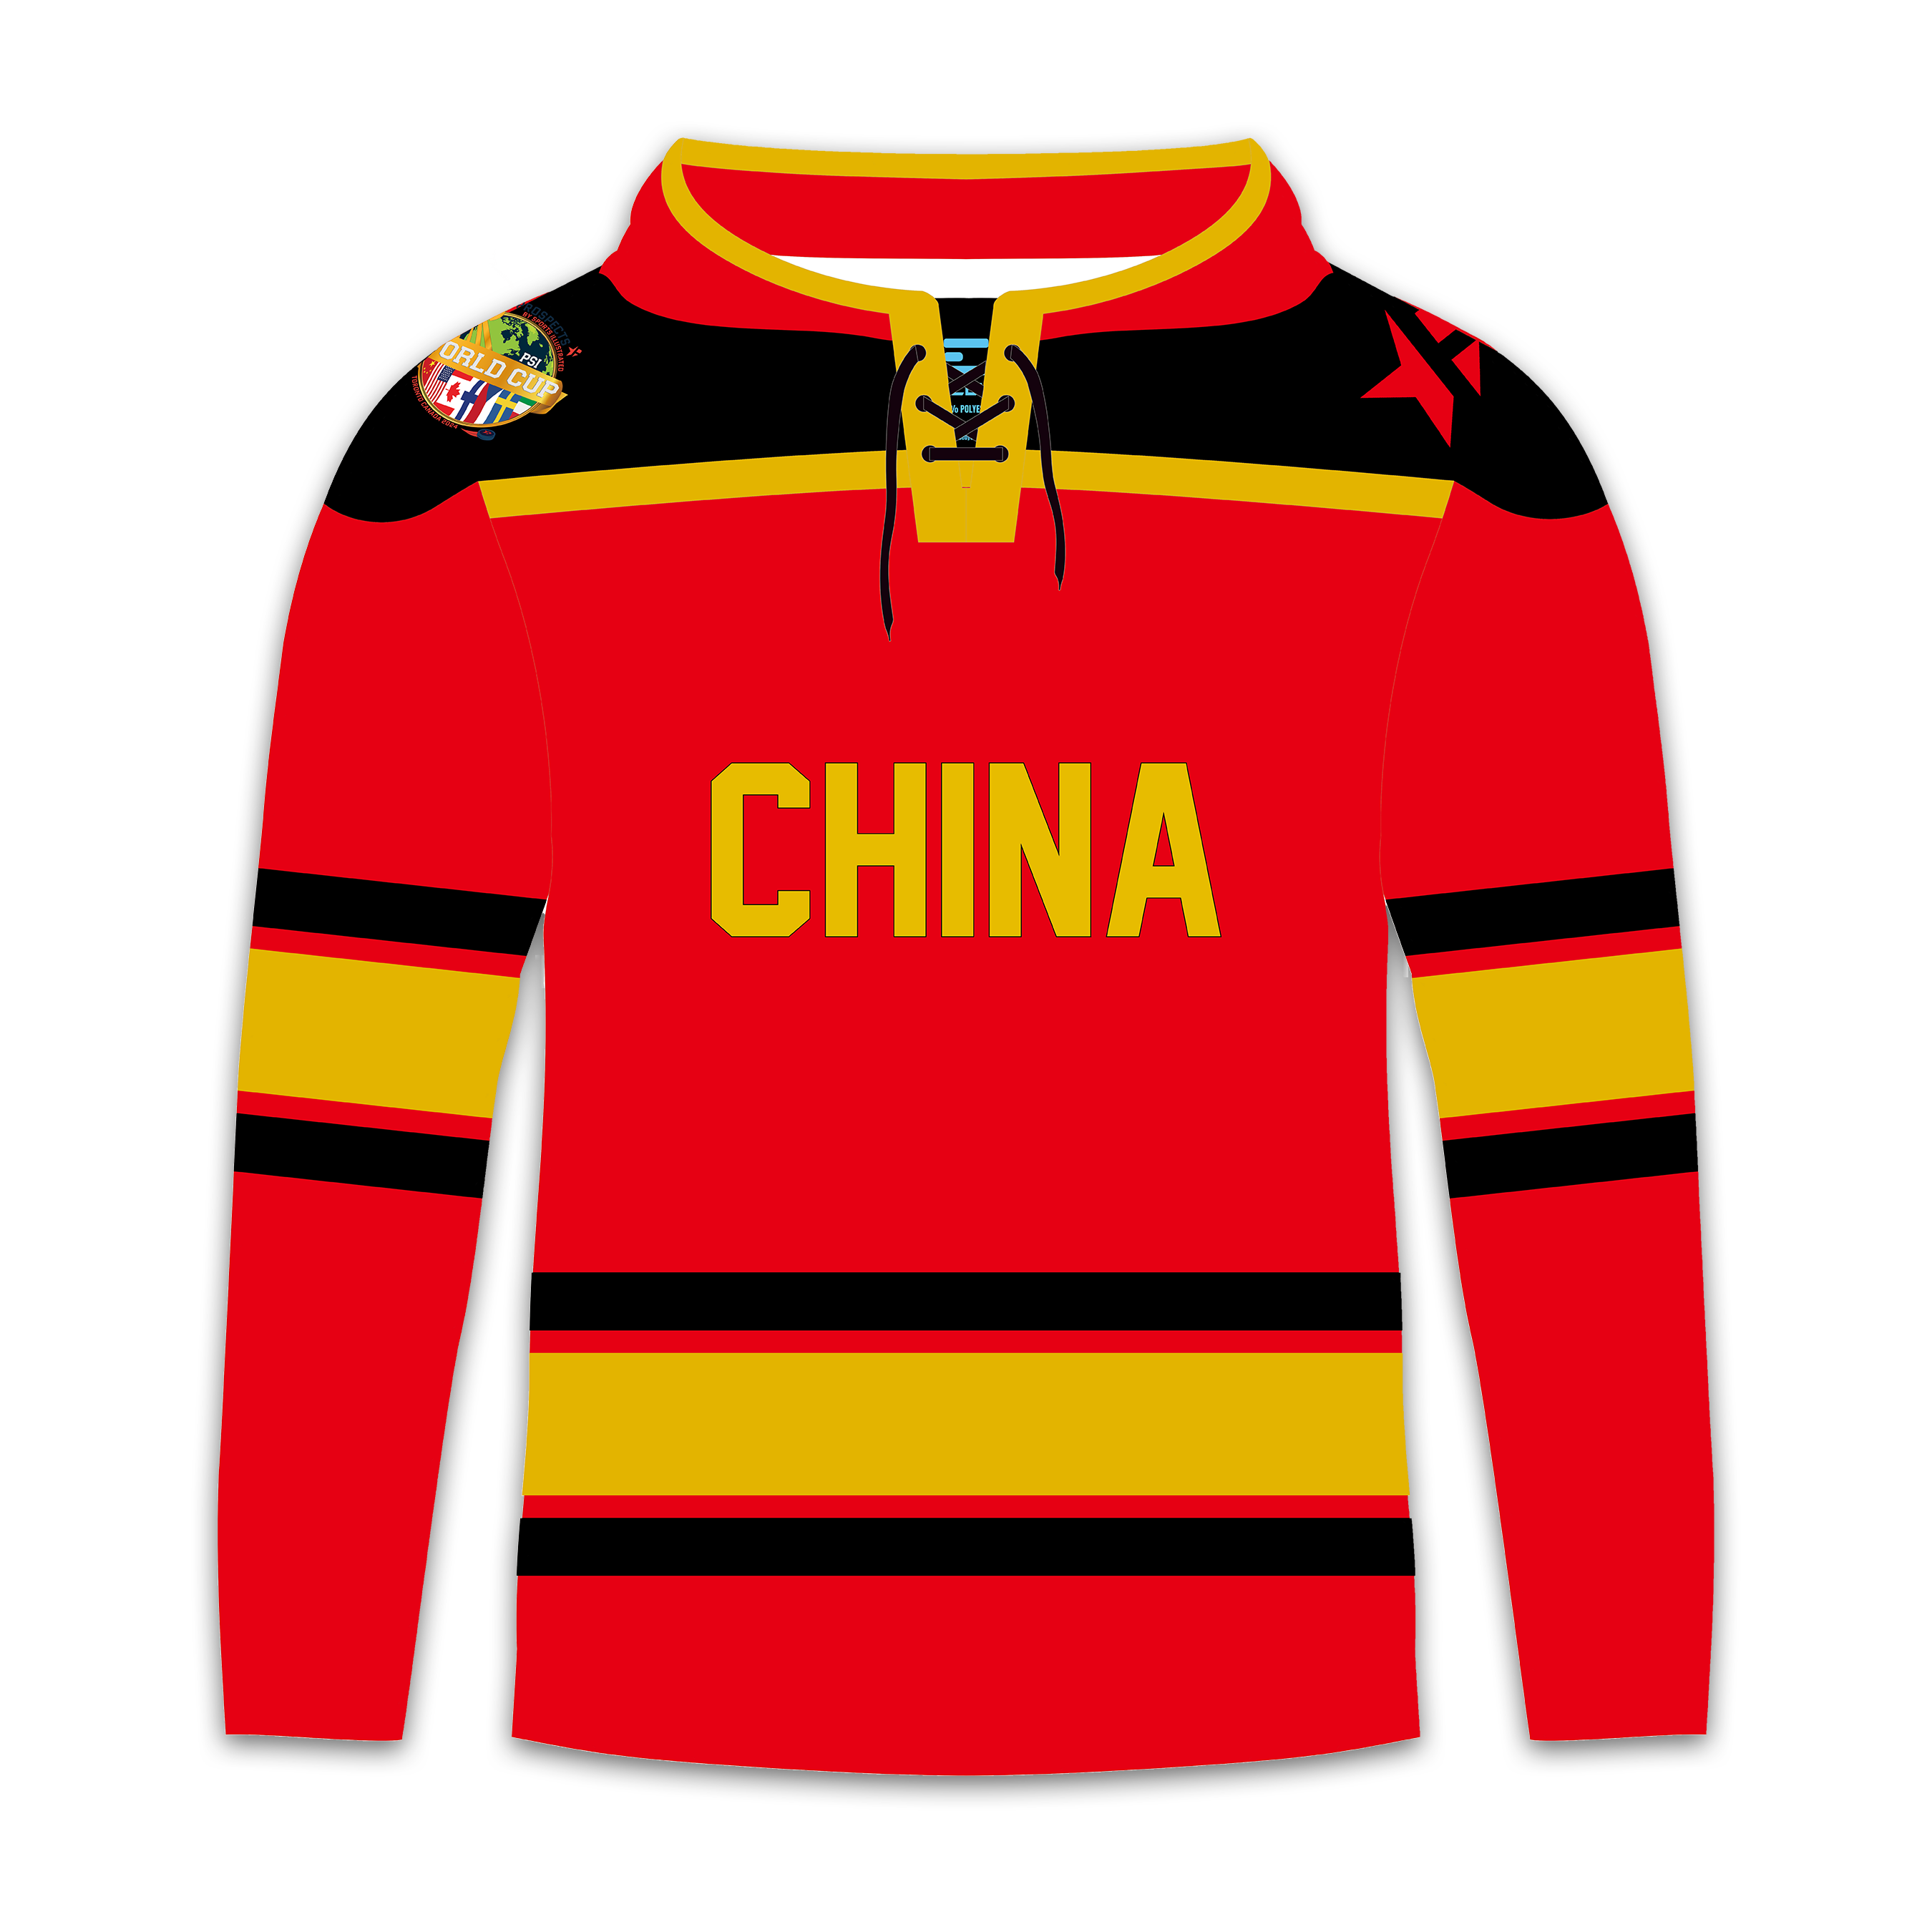 Kiinan MM-joukkuepaketti